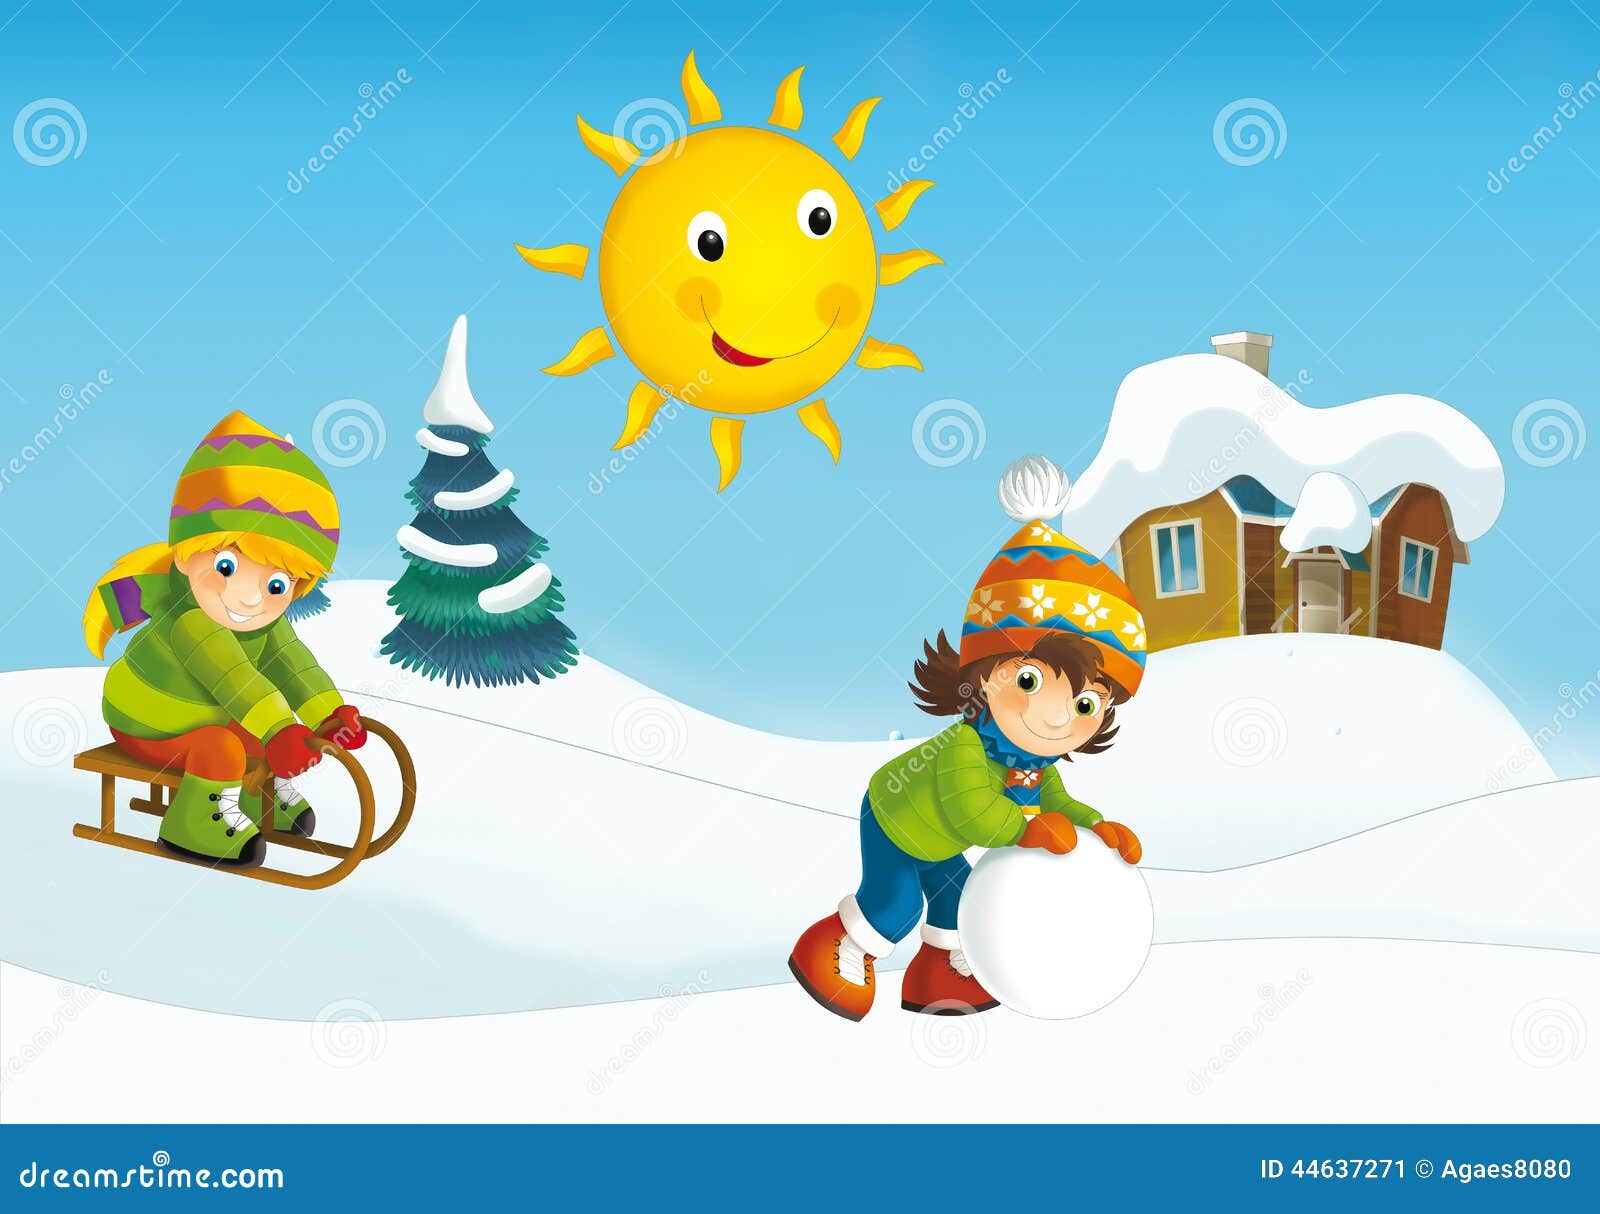 Winter Cartoon Scene Stock Illustration - Image: 44637271